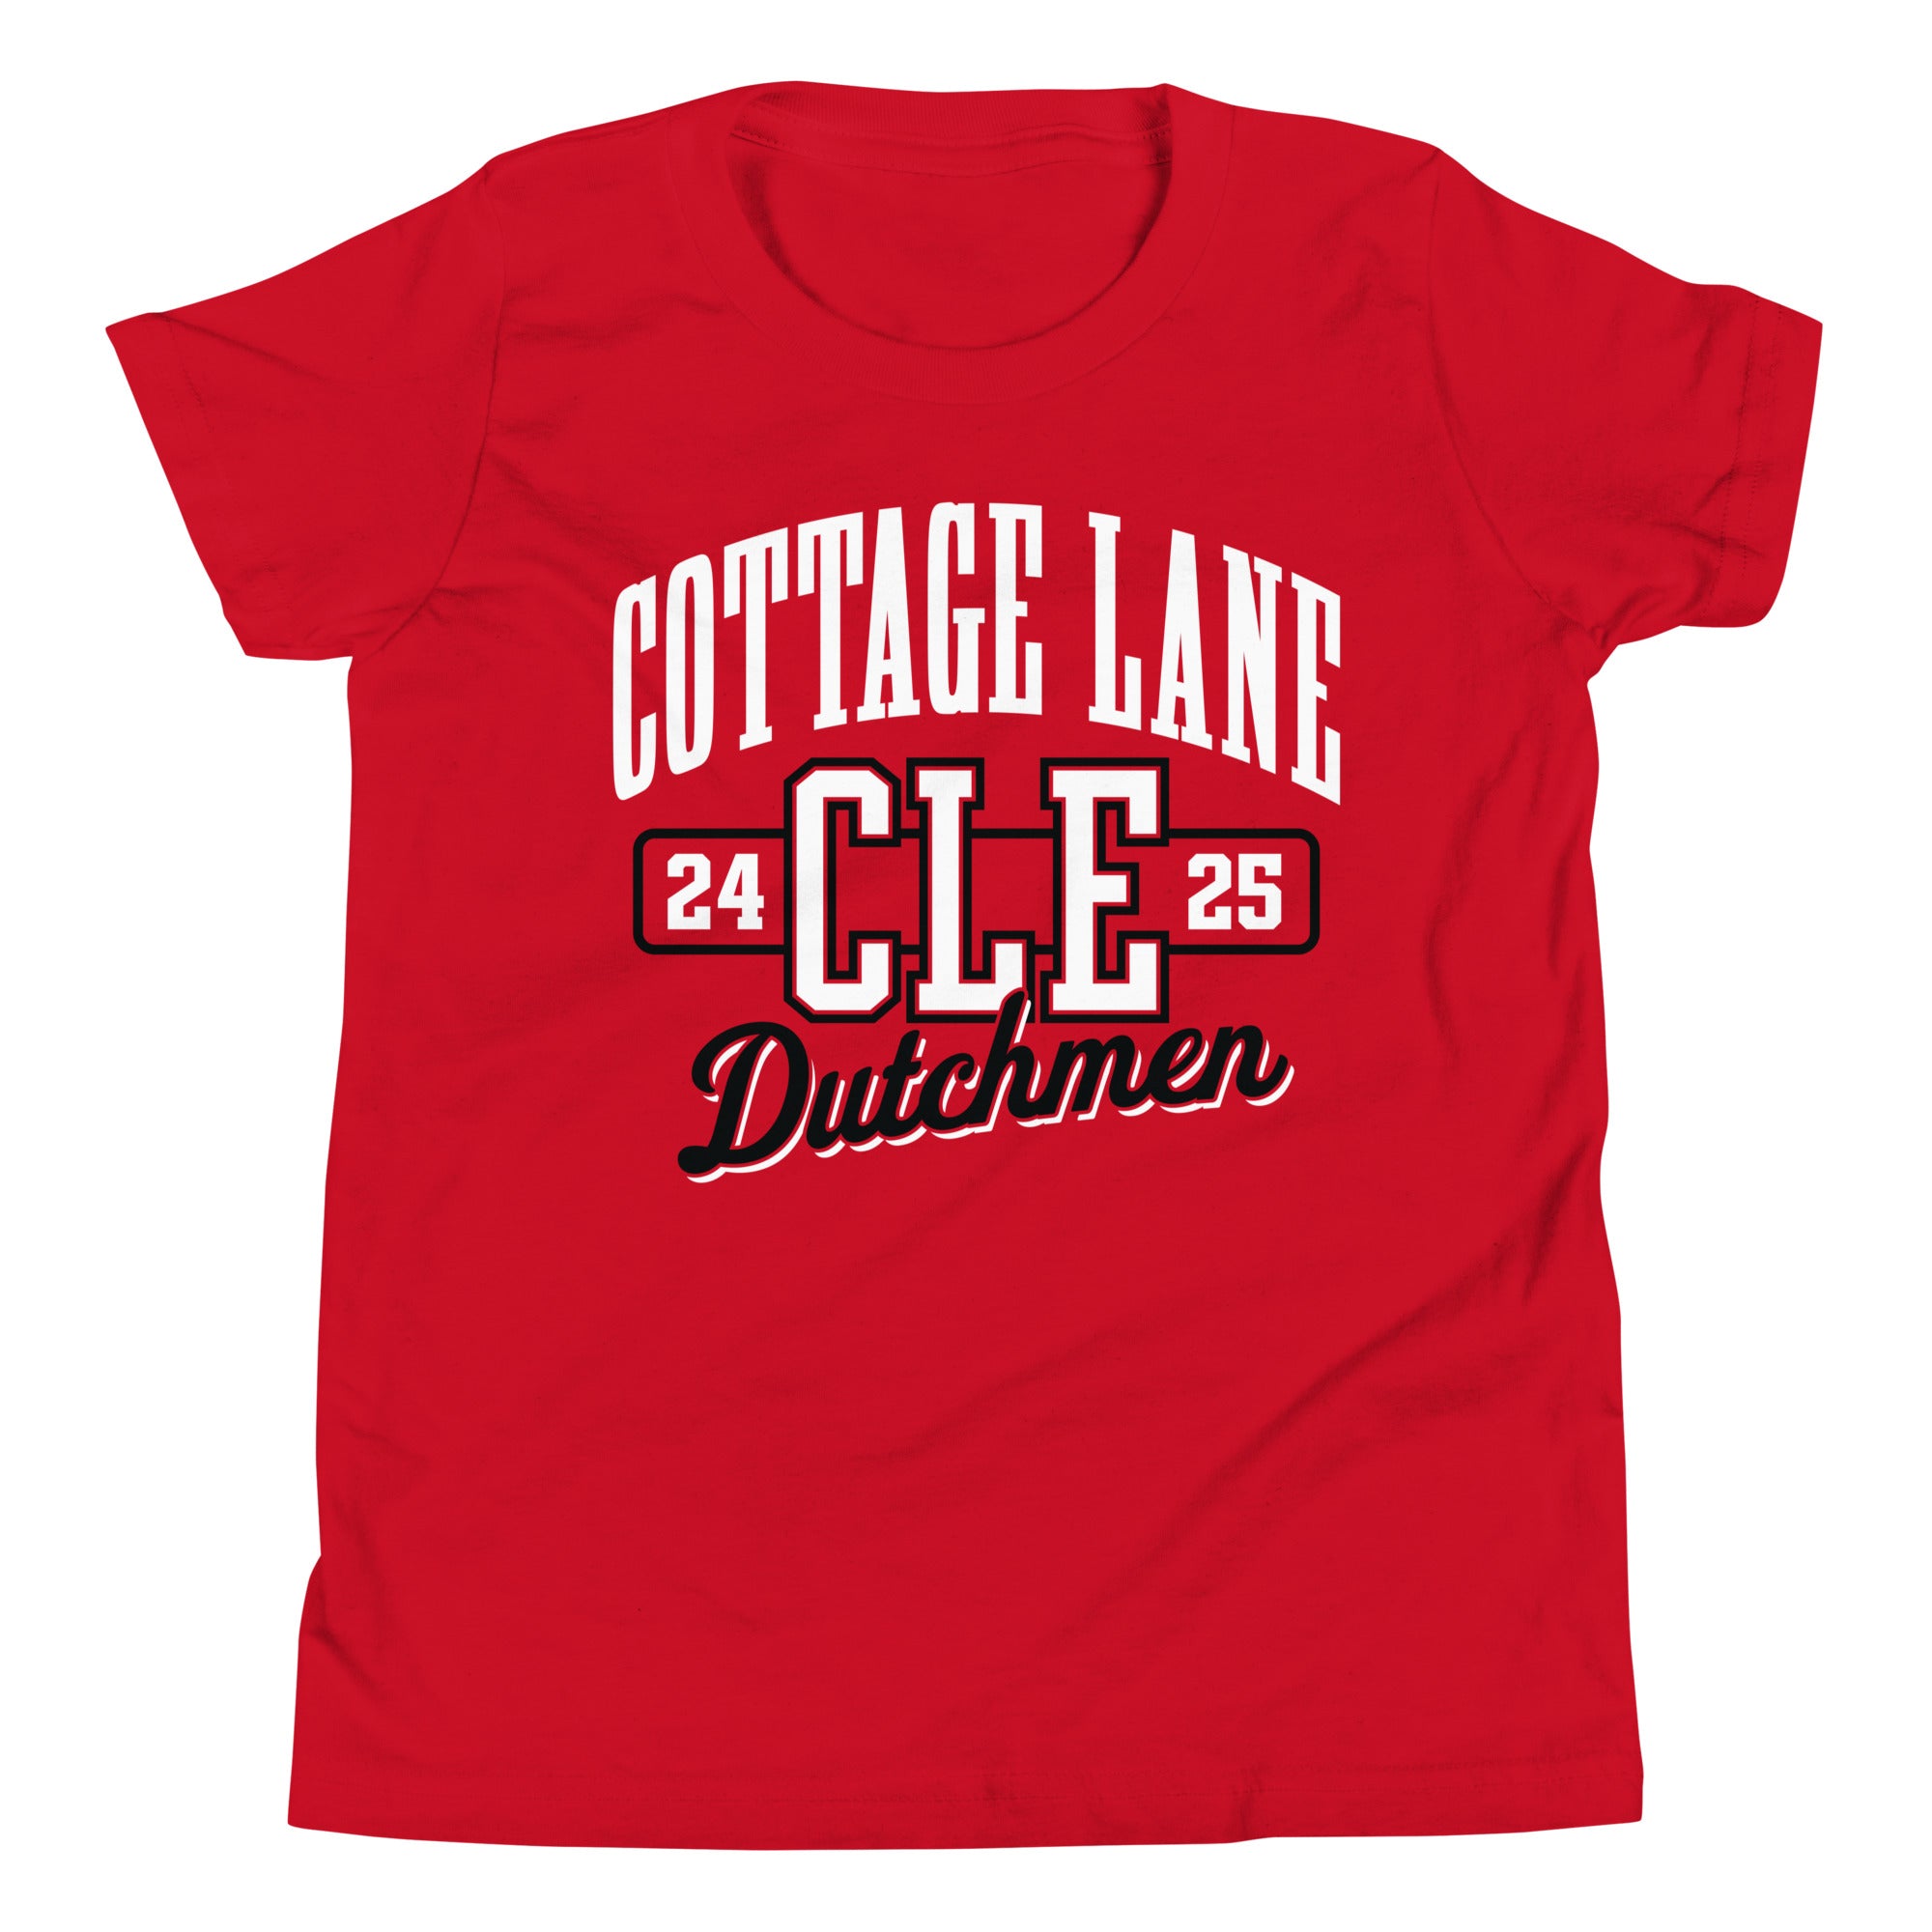 Cottage Lane Elementary Youth Short Sleeve T-Shirt